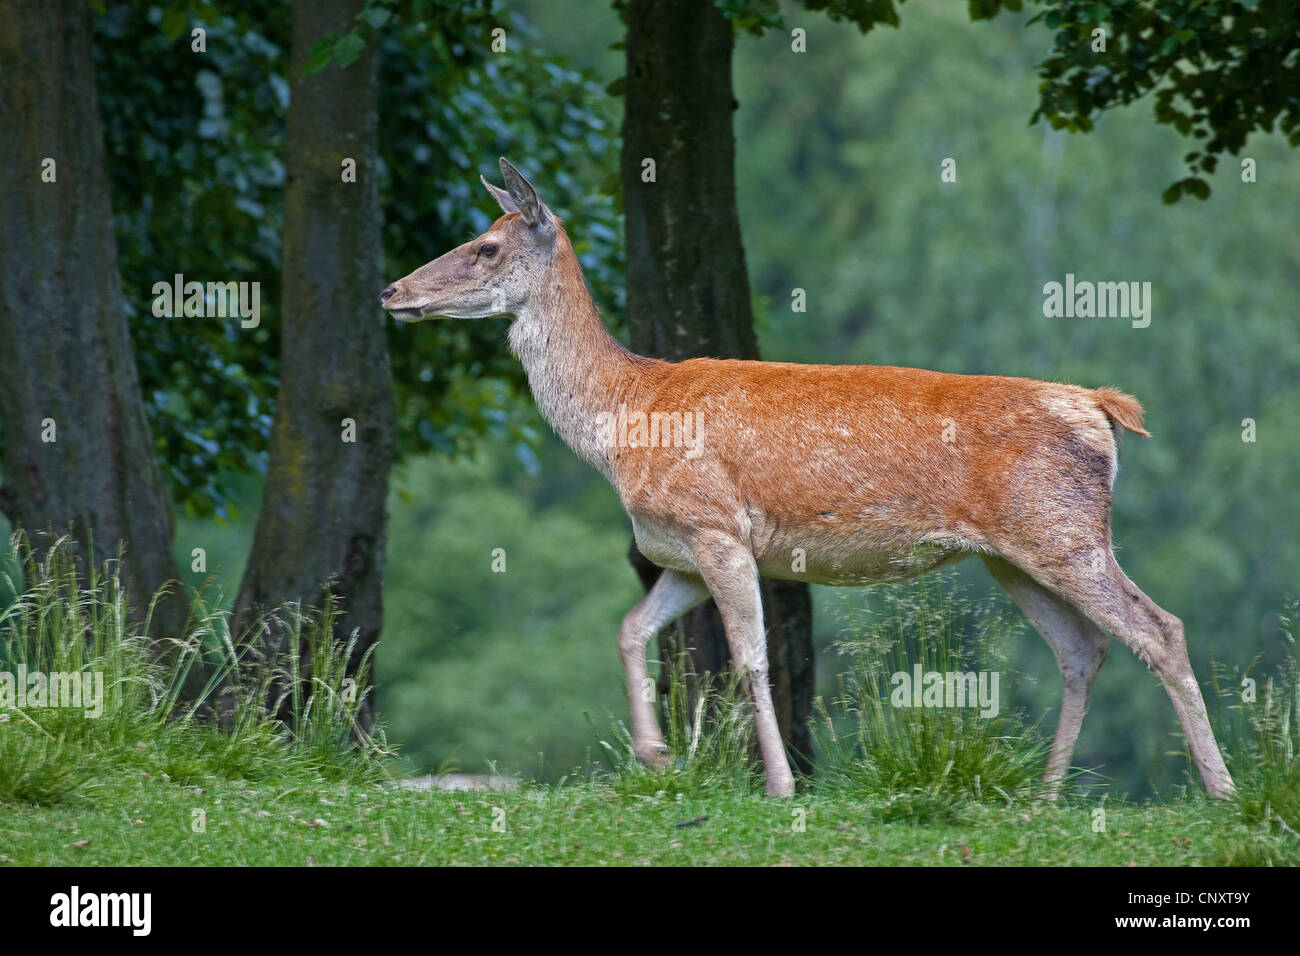 Ciervo rojo (Cervus elaphus), hind en pradera, Alemania Foto de stock